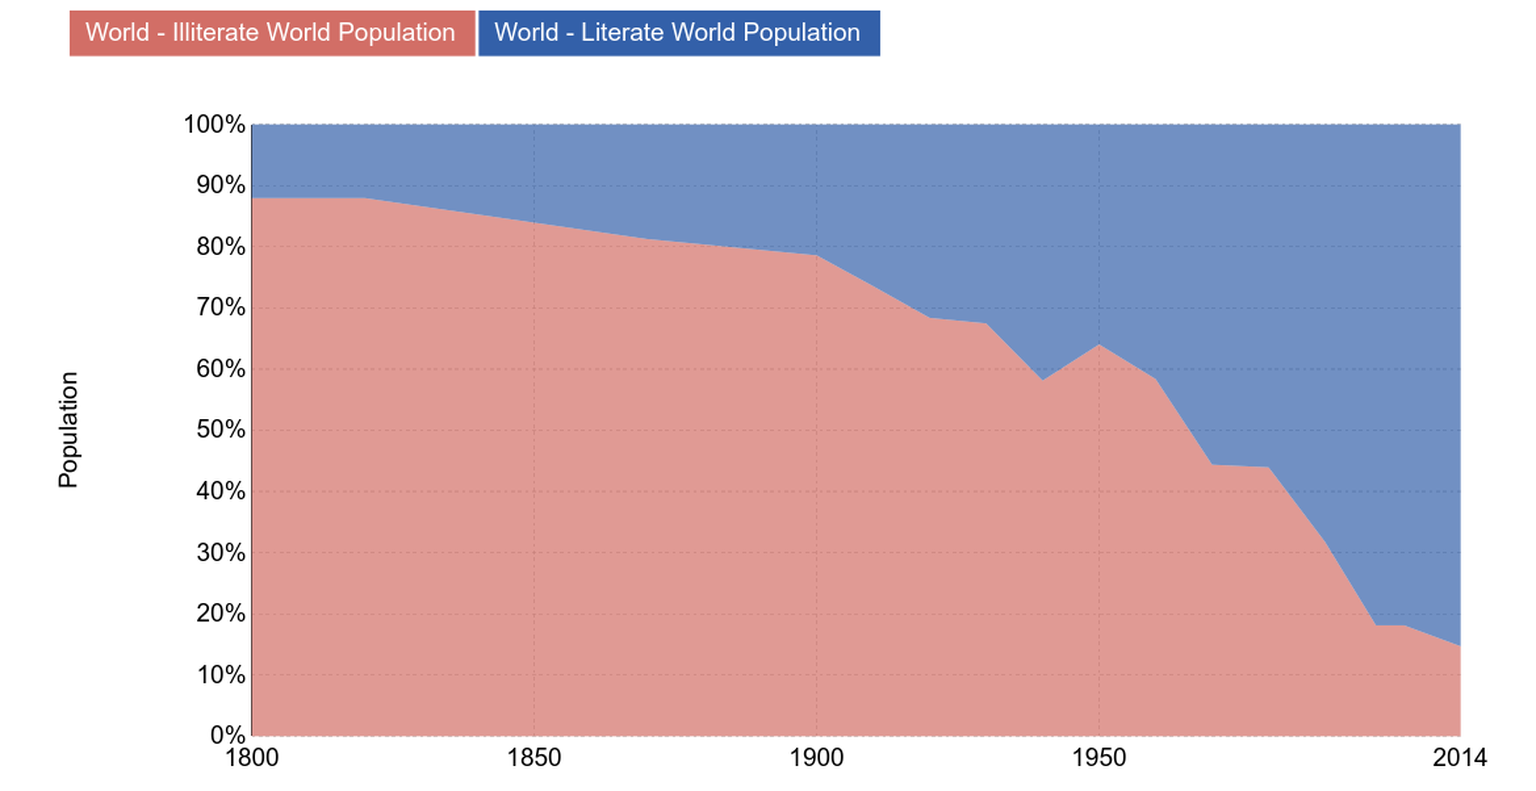 1800 konnten 85 Prozent der Menschen weder lesen noch schreiben, heute sind noch 12 Prozent der Weltbevölkerung Analphabeten.